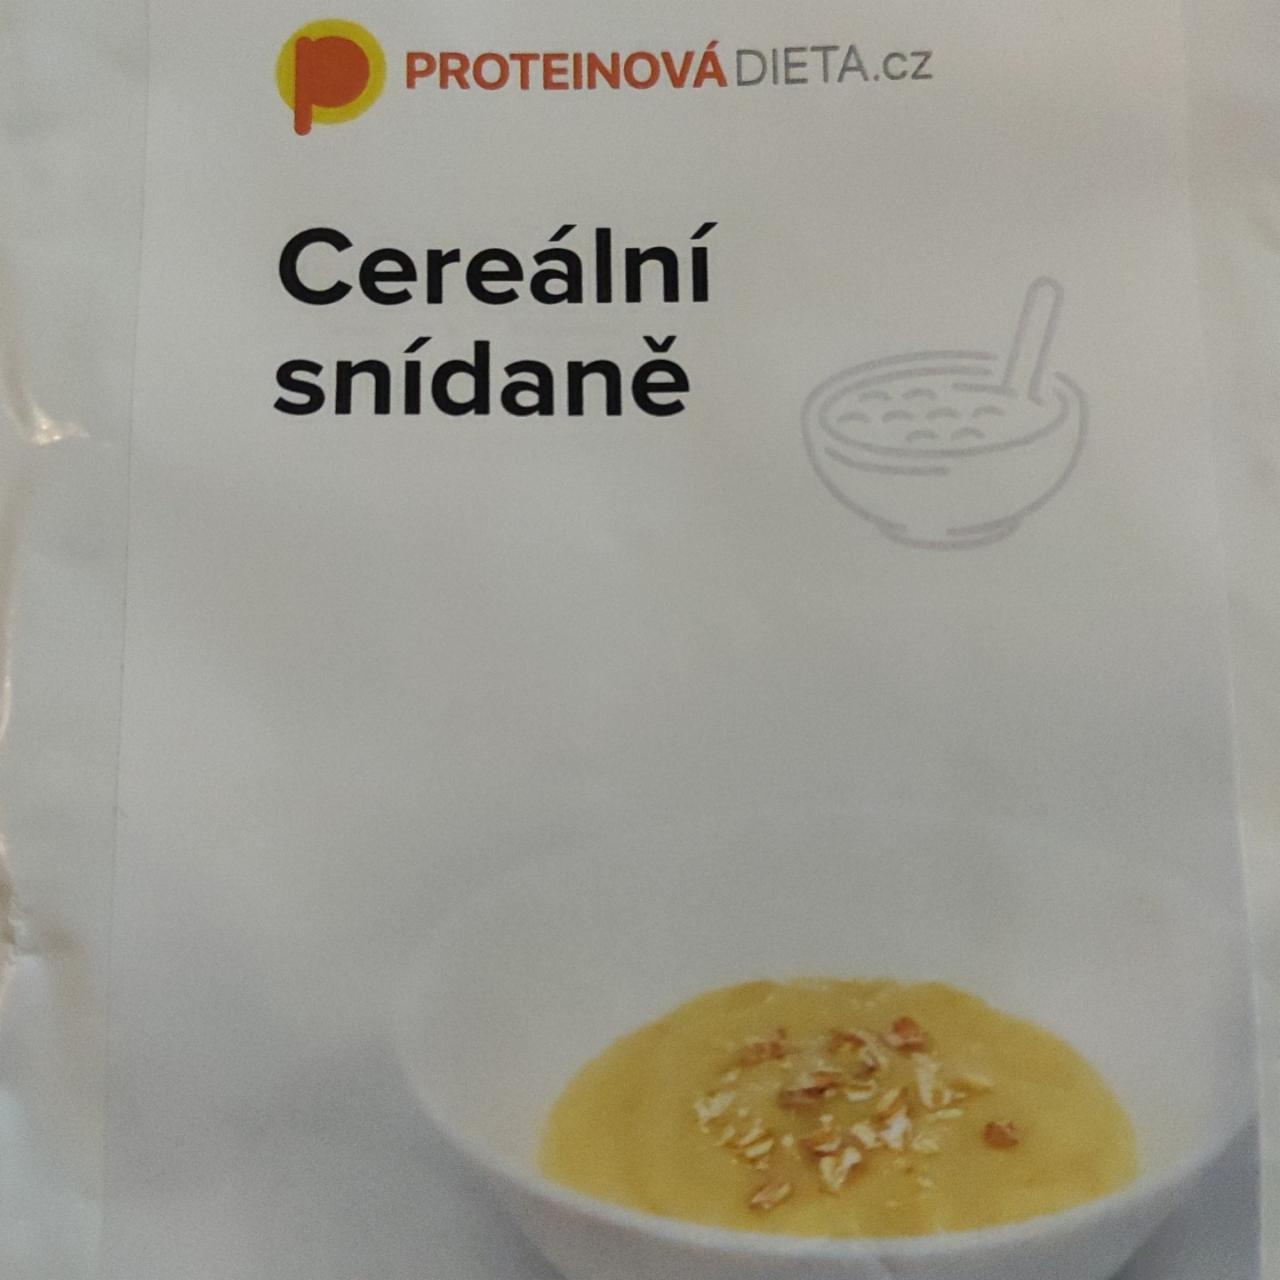 Fotografie - Cereální snídaně ProteinováDieta.cz